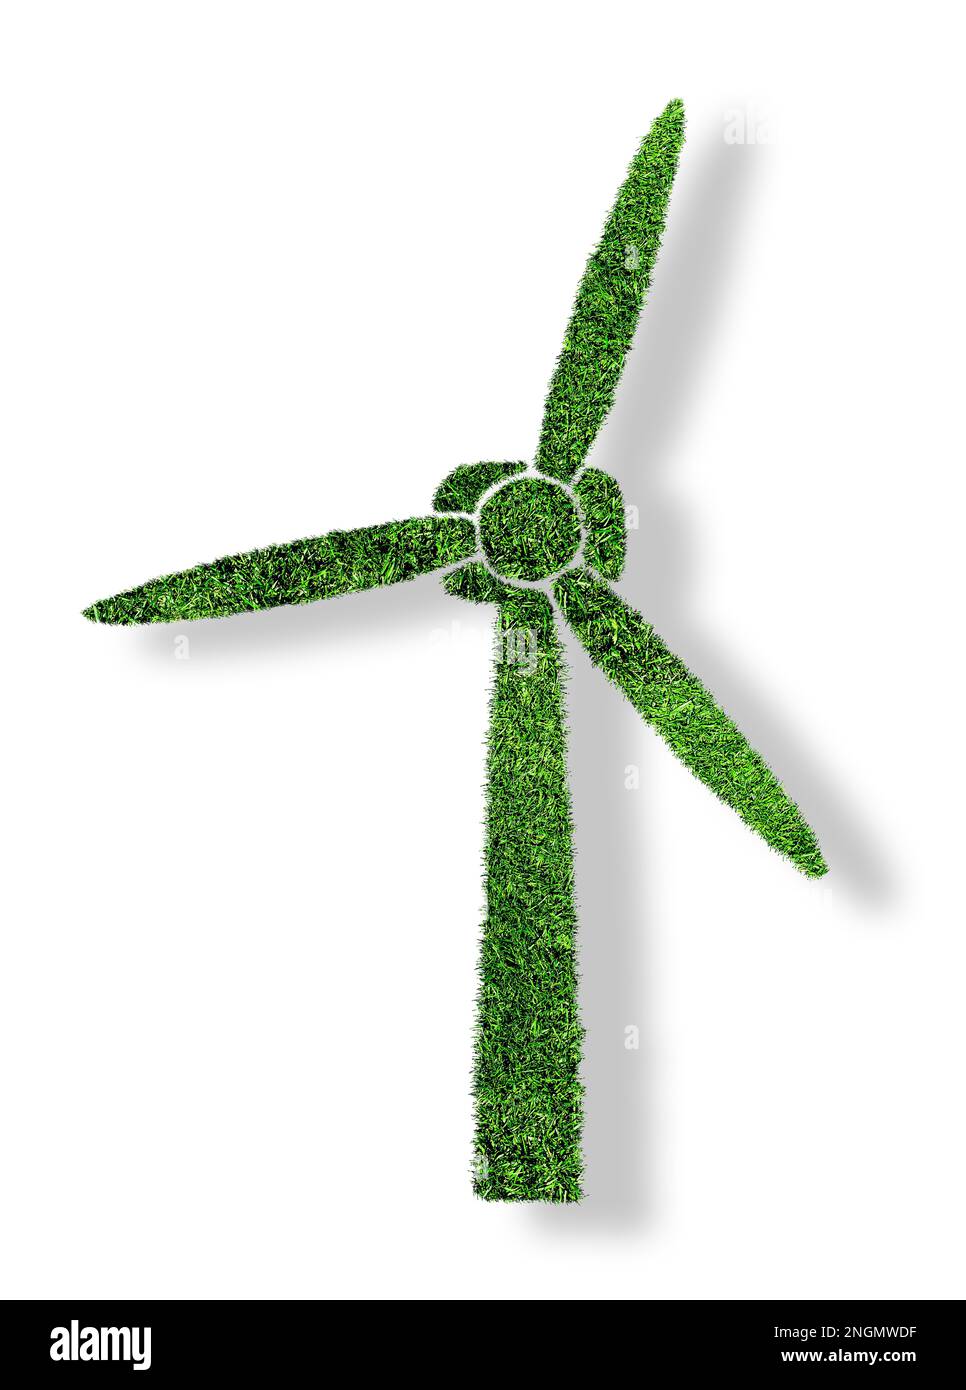 turbina eolica verde erba isolata su sfondo bianco, simbolo di concetto di energia rinnovabile e a basso impatto ambientale Foto Stock